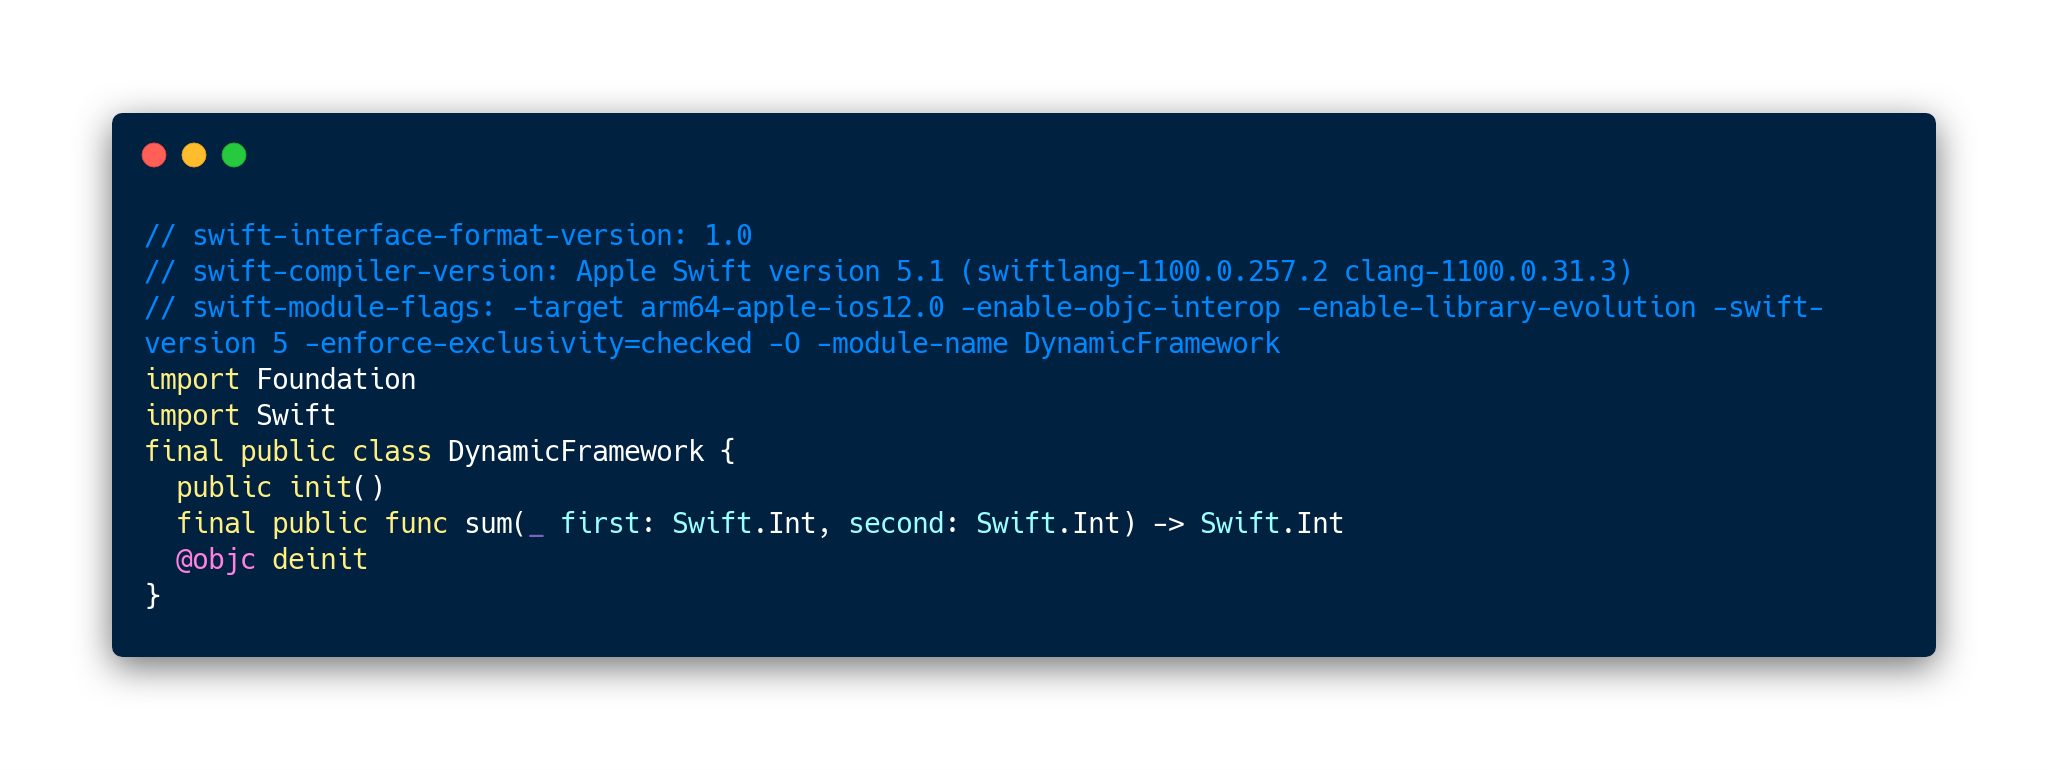 swift-interface